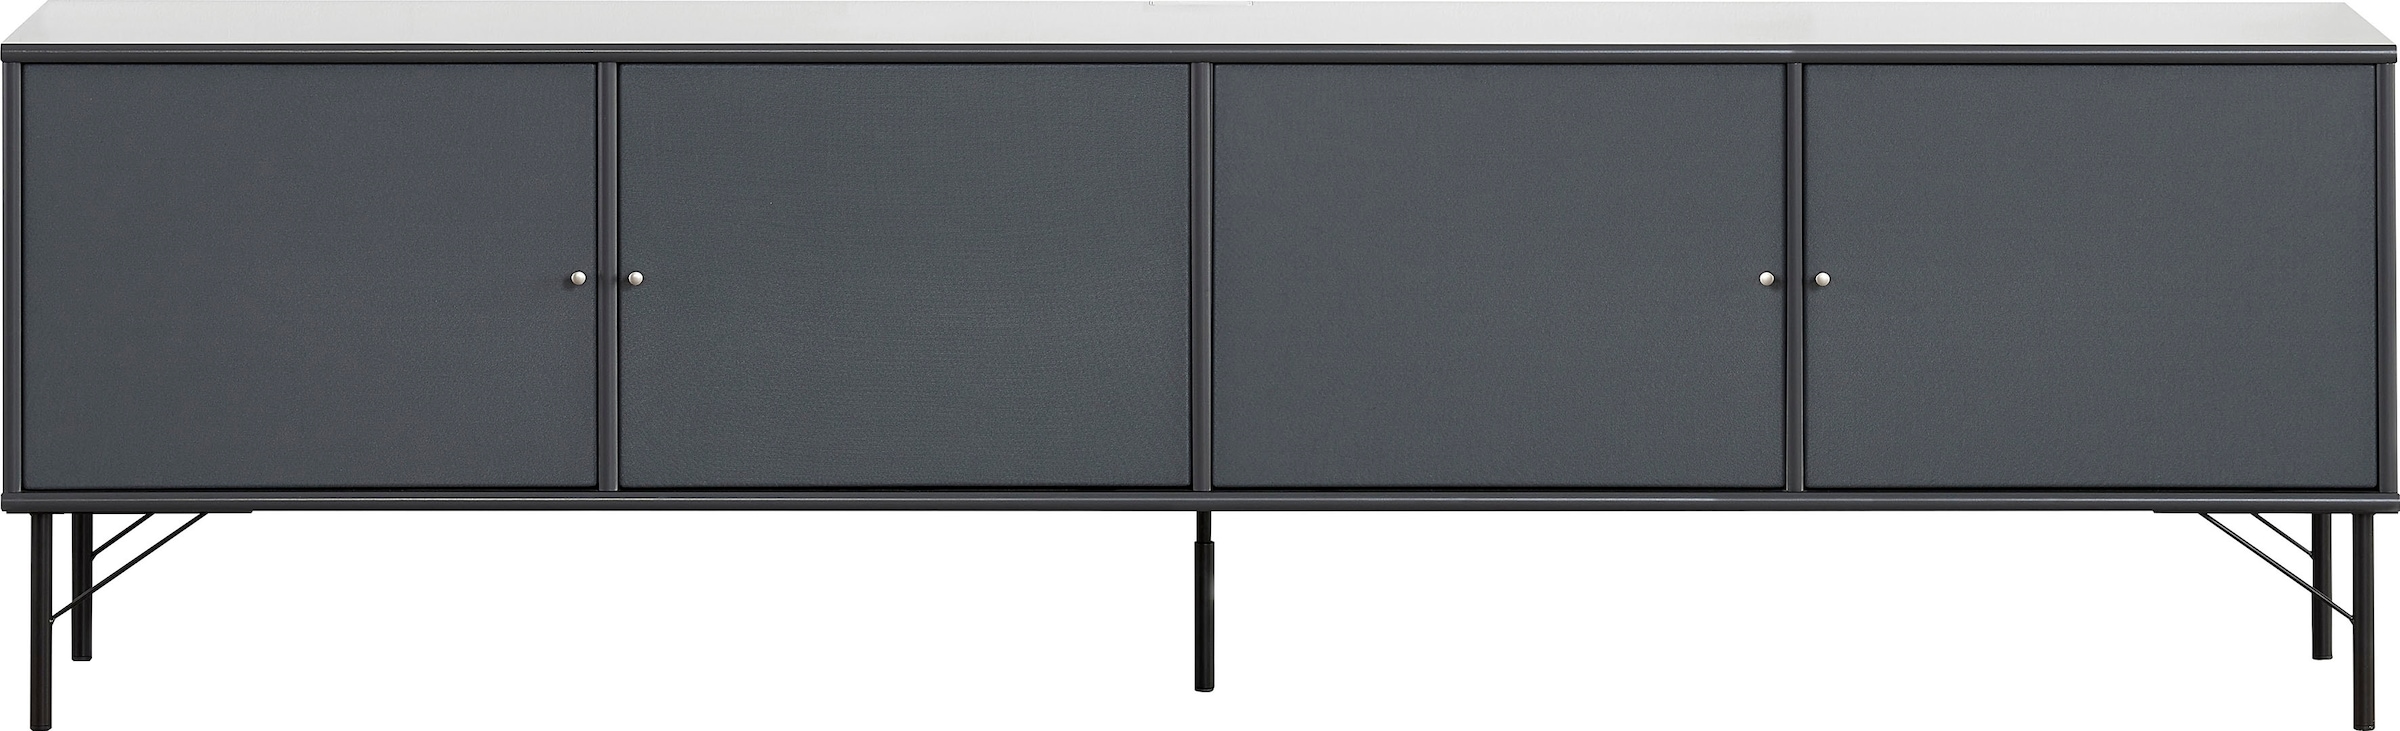 Hammel Furniture TV-Board »Mistral Fernsehschrank, Medienmöbel«, mit Türen mit Akustikstoff, Metall Füße, Lowboard, B: 214,9 cm